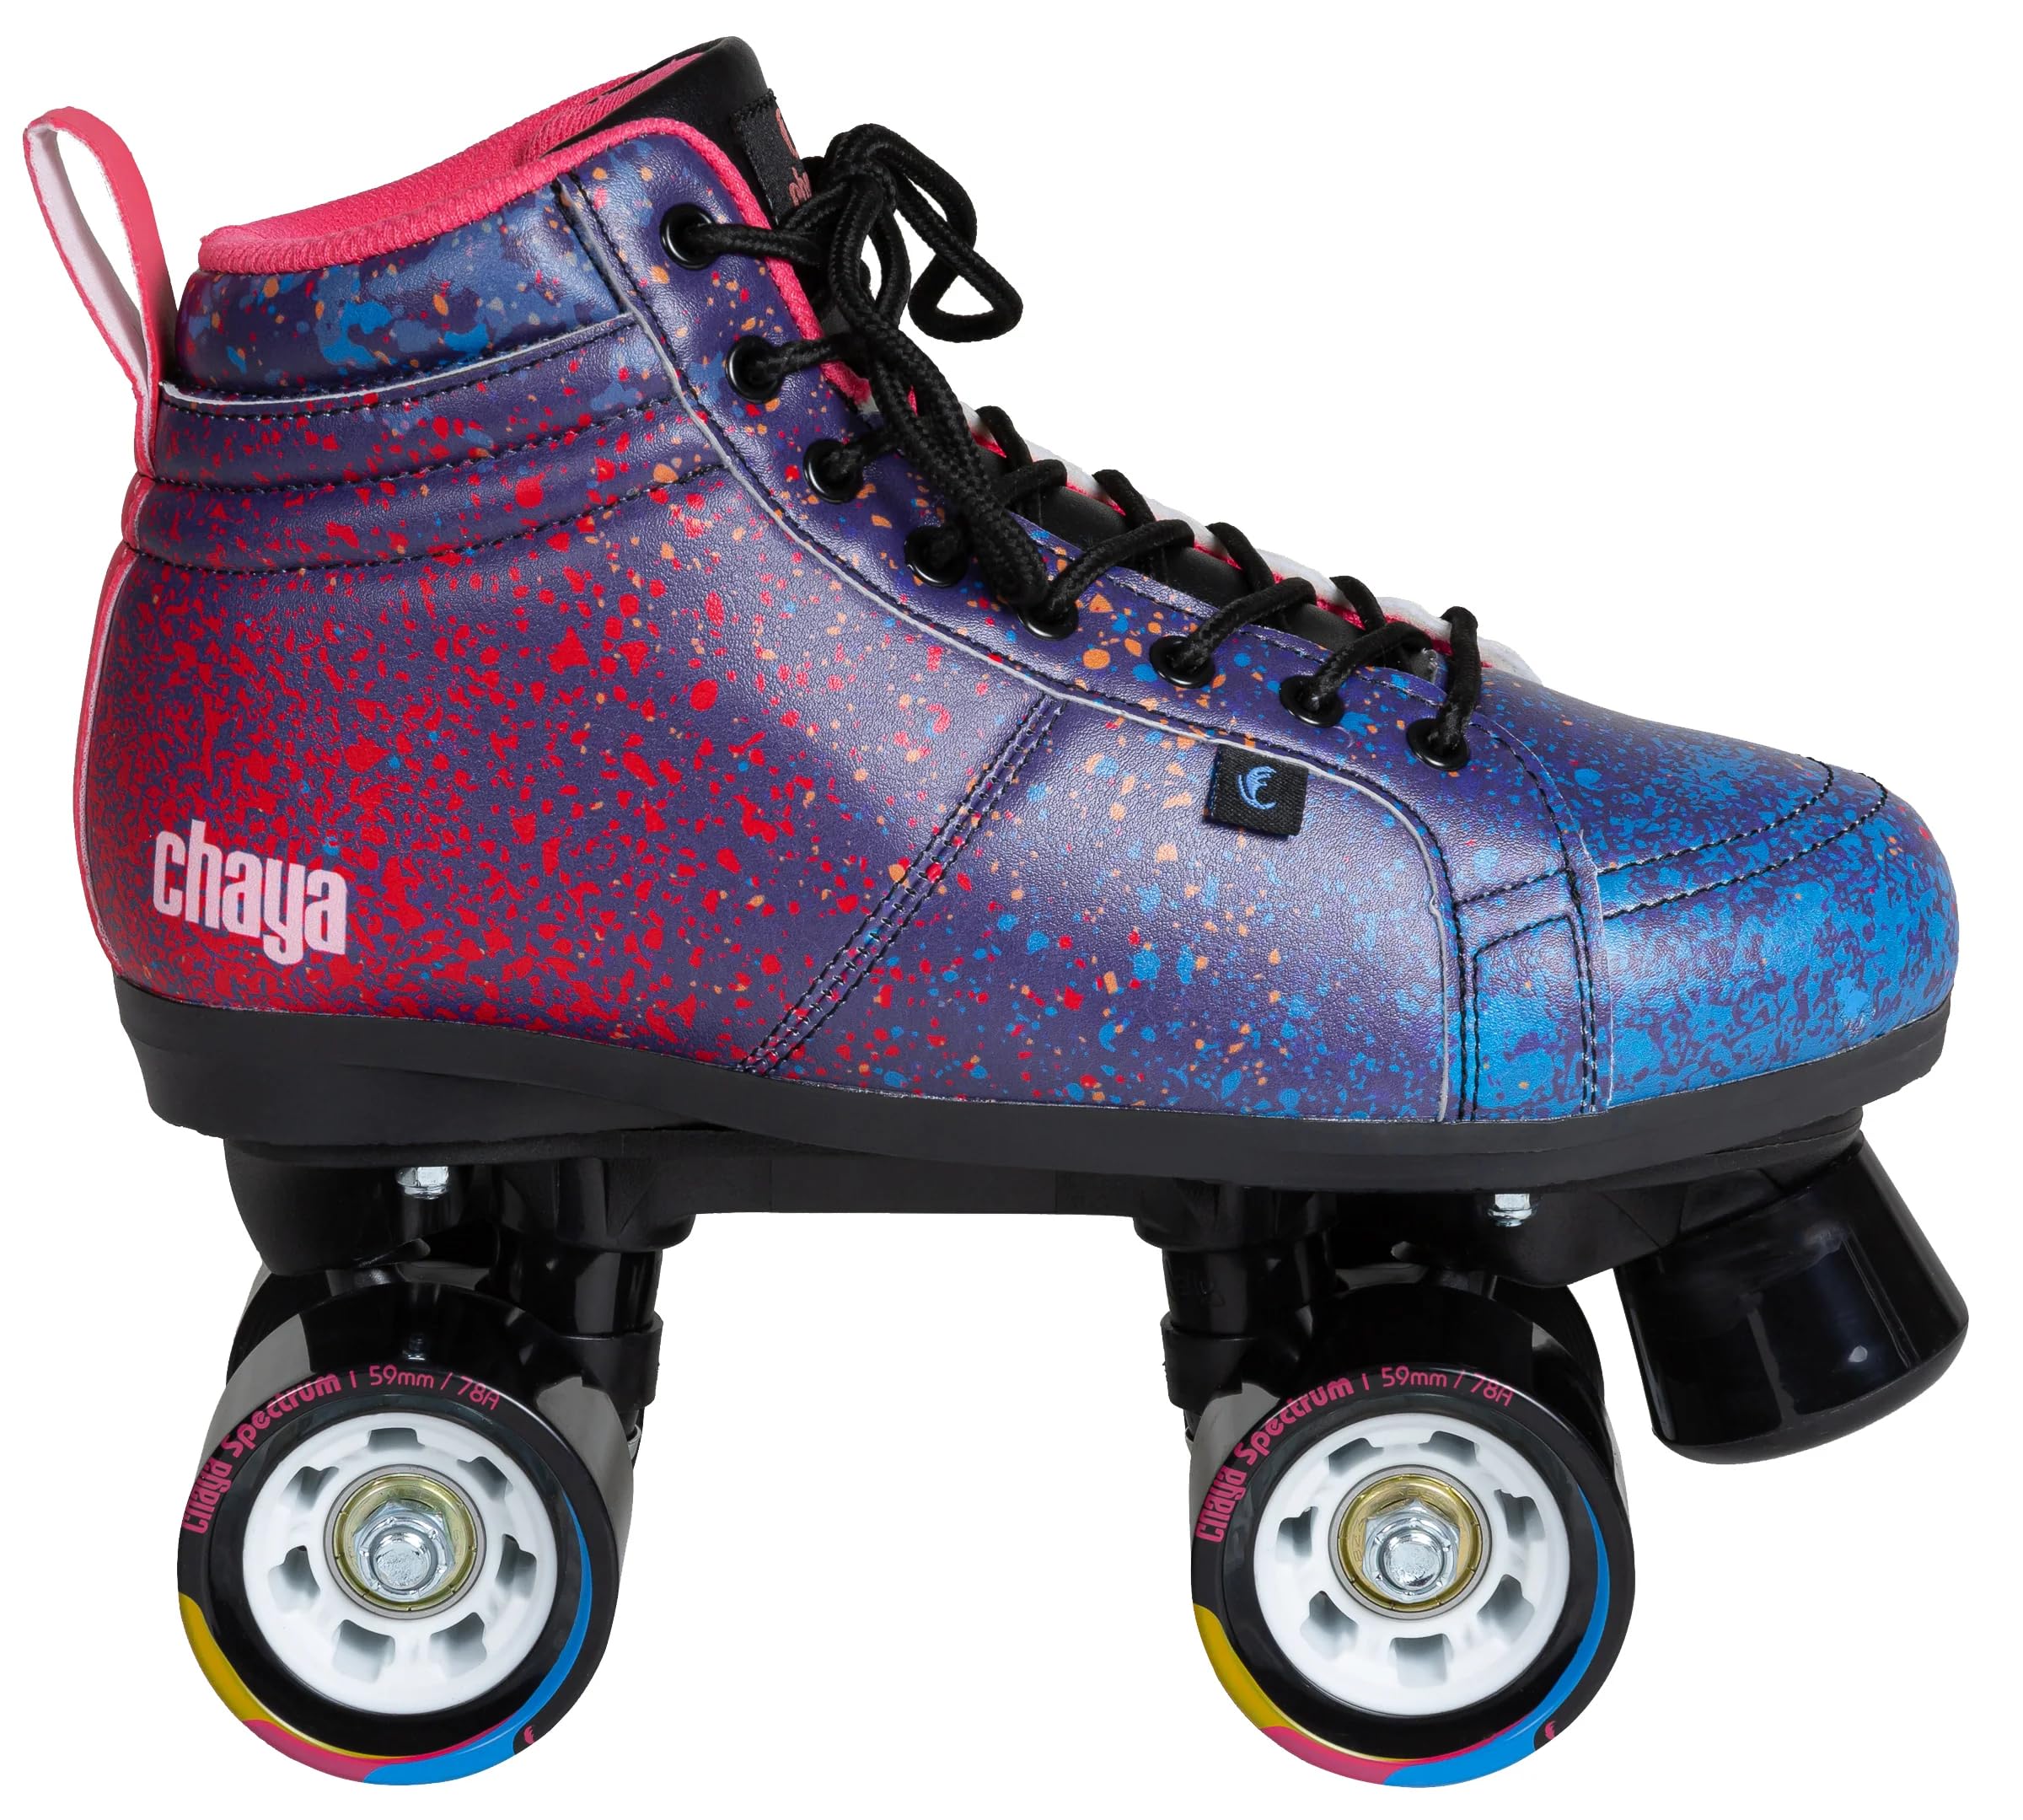 Chaya Roller Skates Airbrush, Unisex für Herren und Damen in Blau, 59mm/78A Rollen, ABEC 7 Kugellager, Art. nr.: 810671